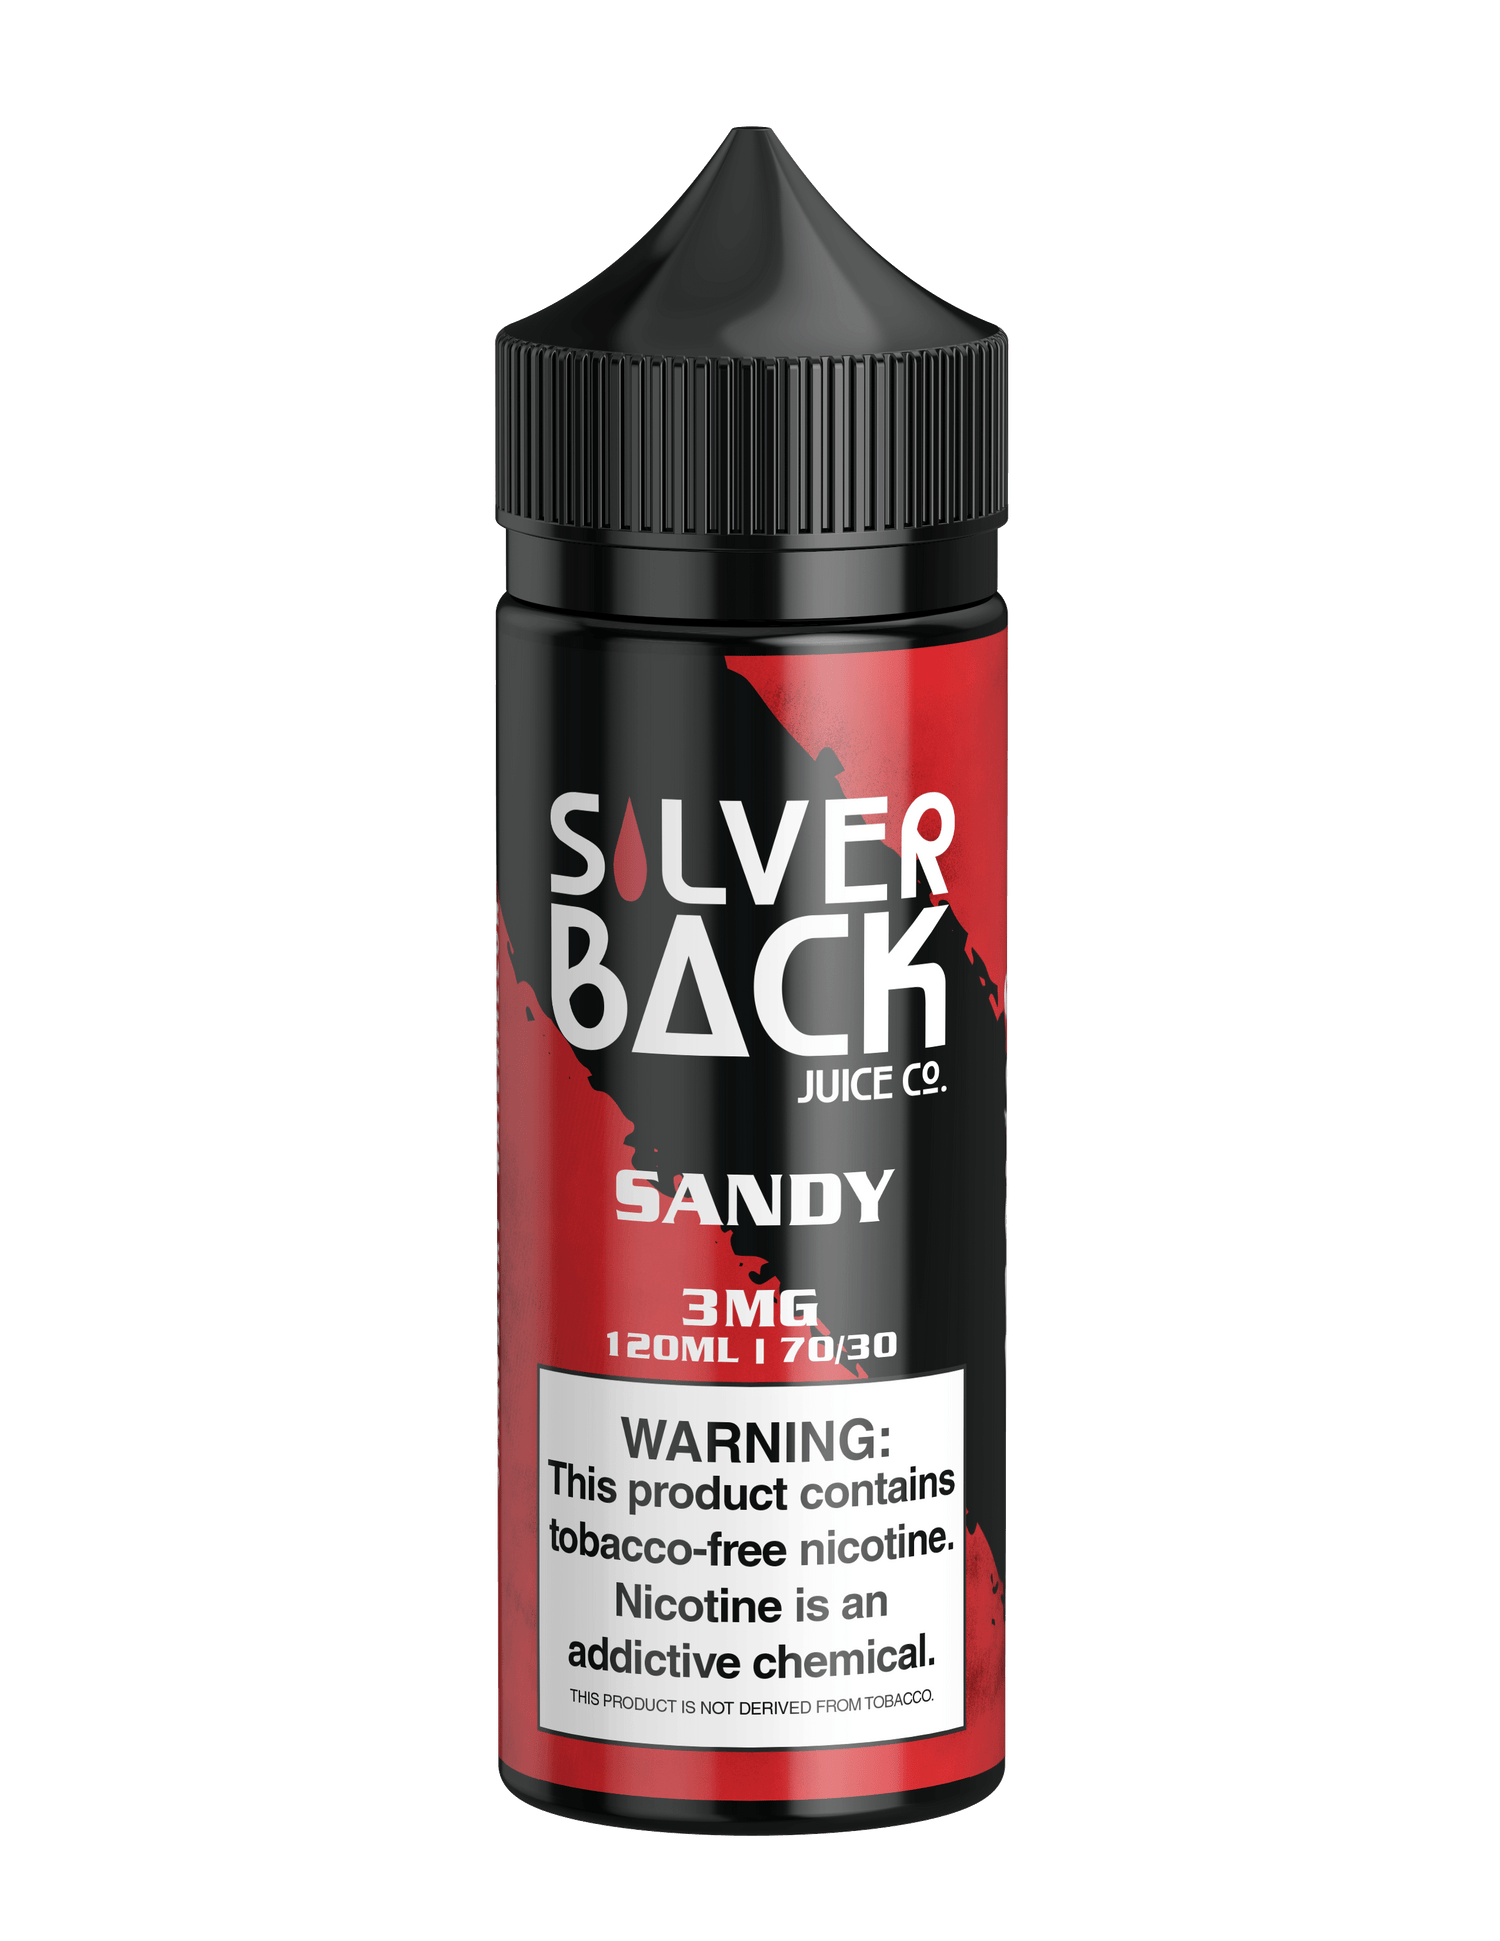 Sandy - Silverback Juice Co. - 120mL